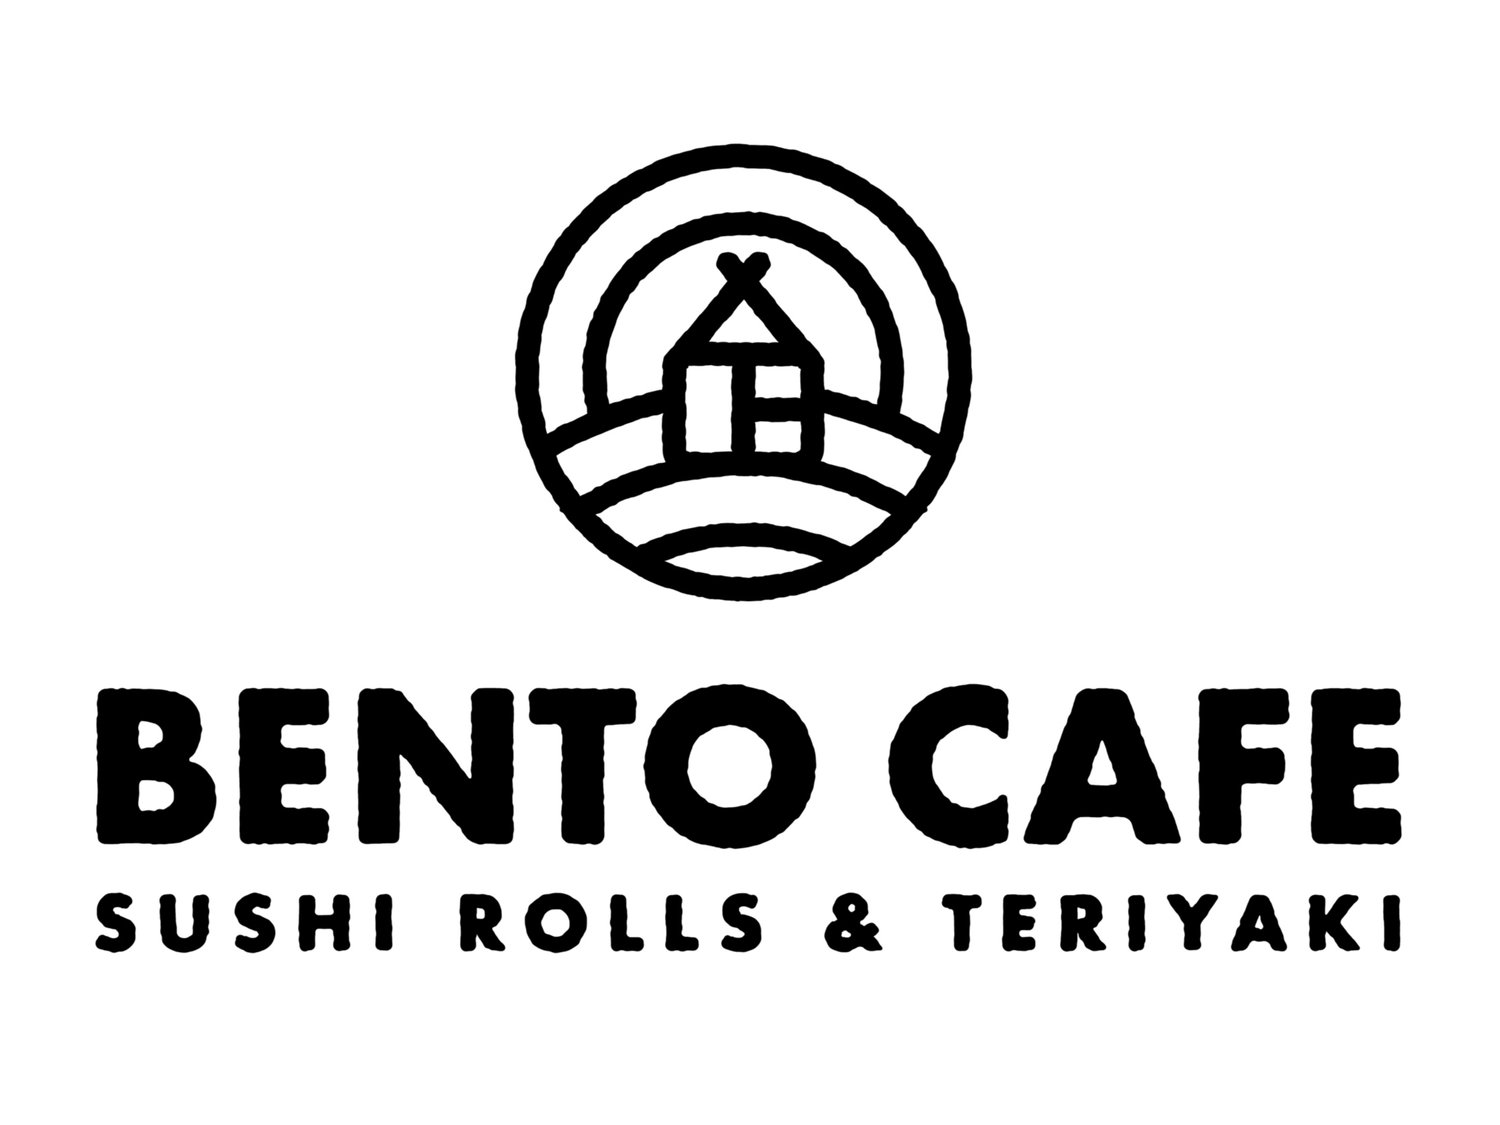 BENTO CAFE